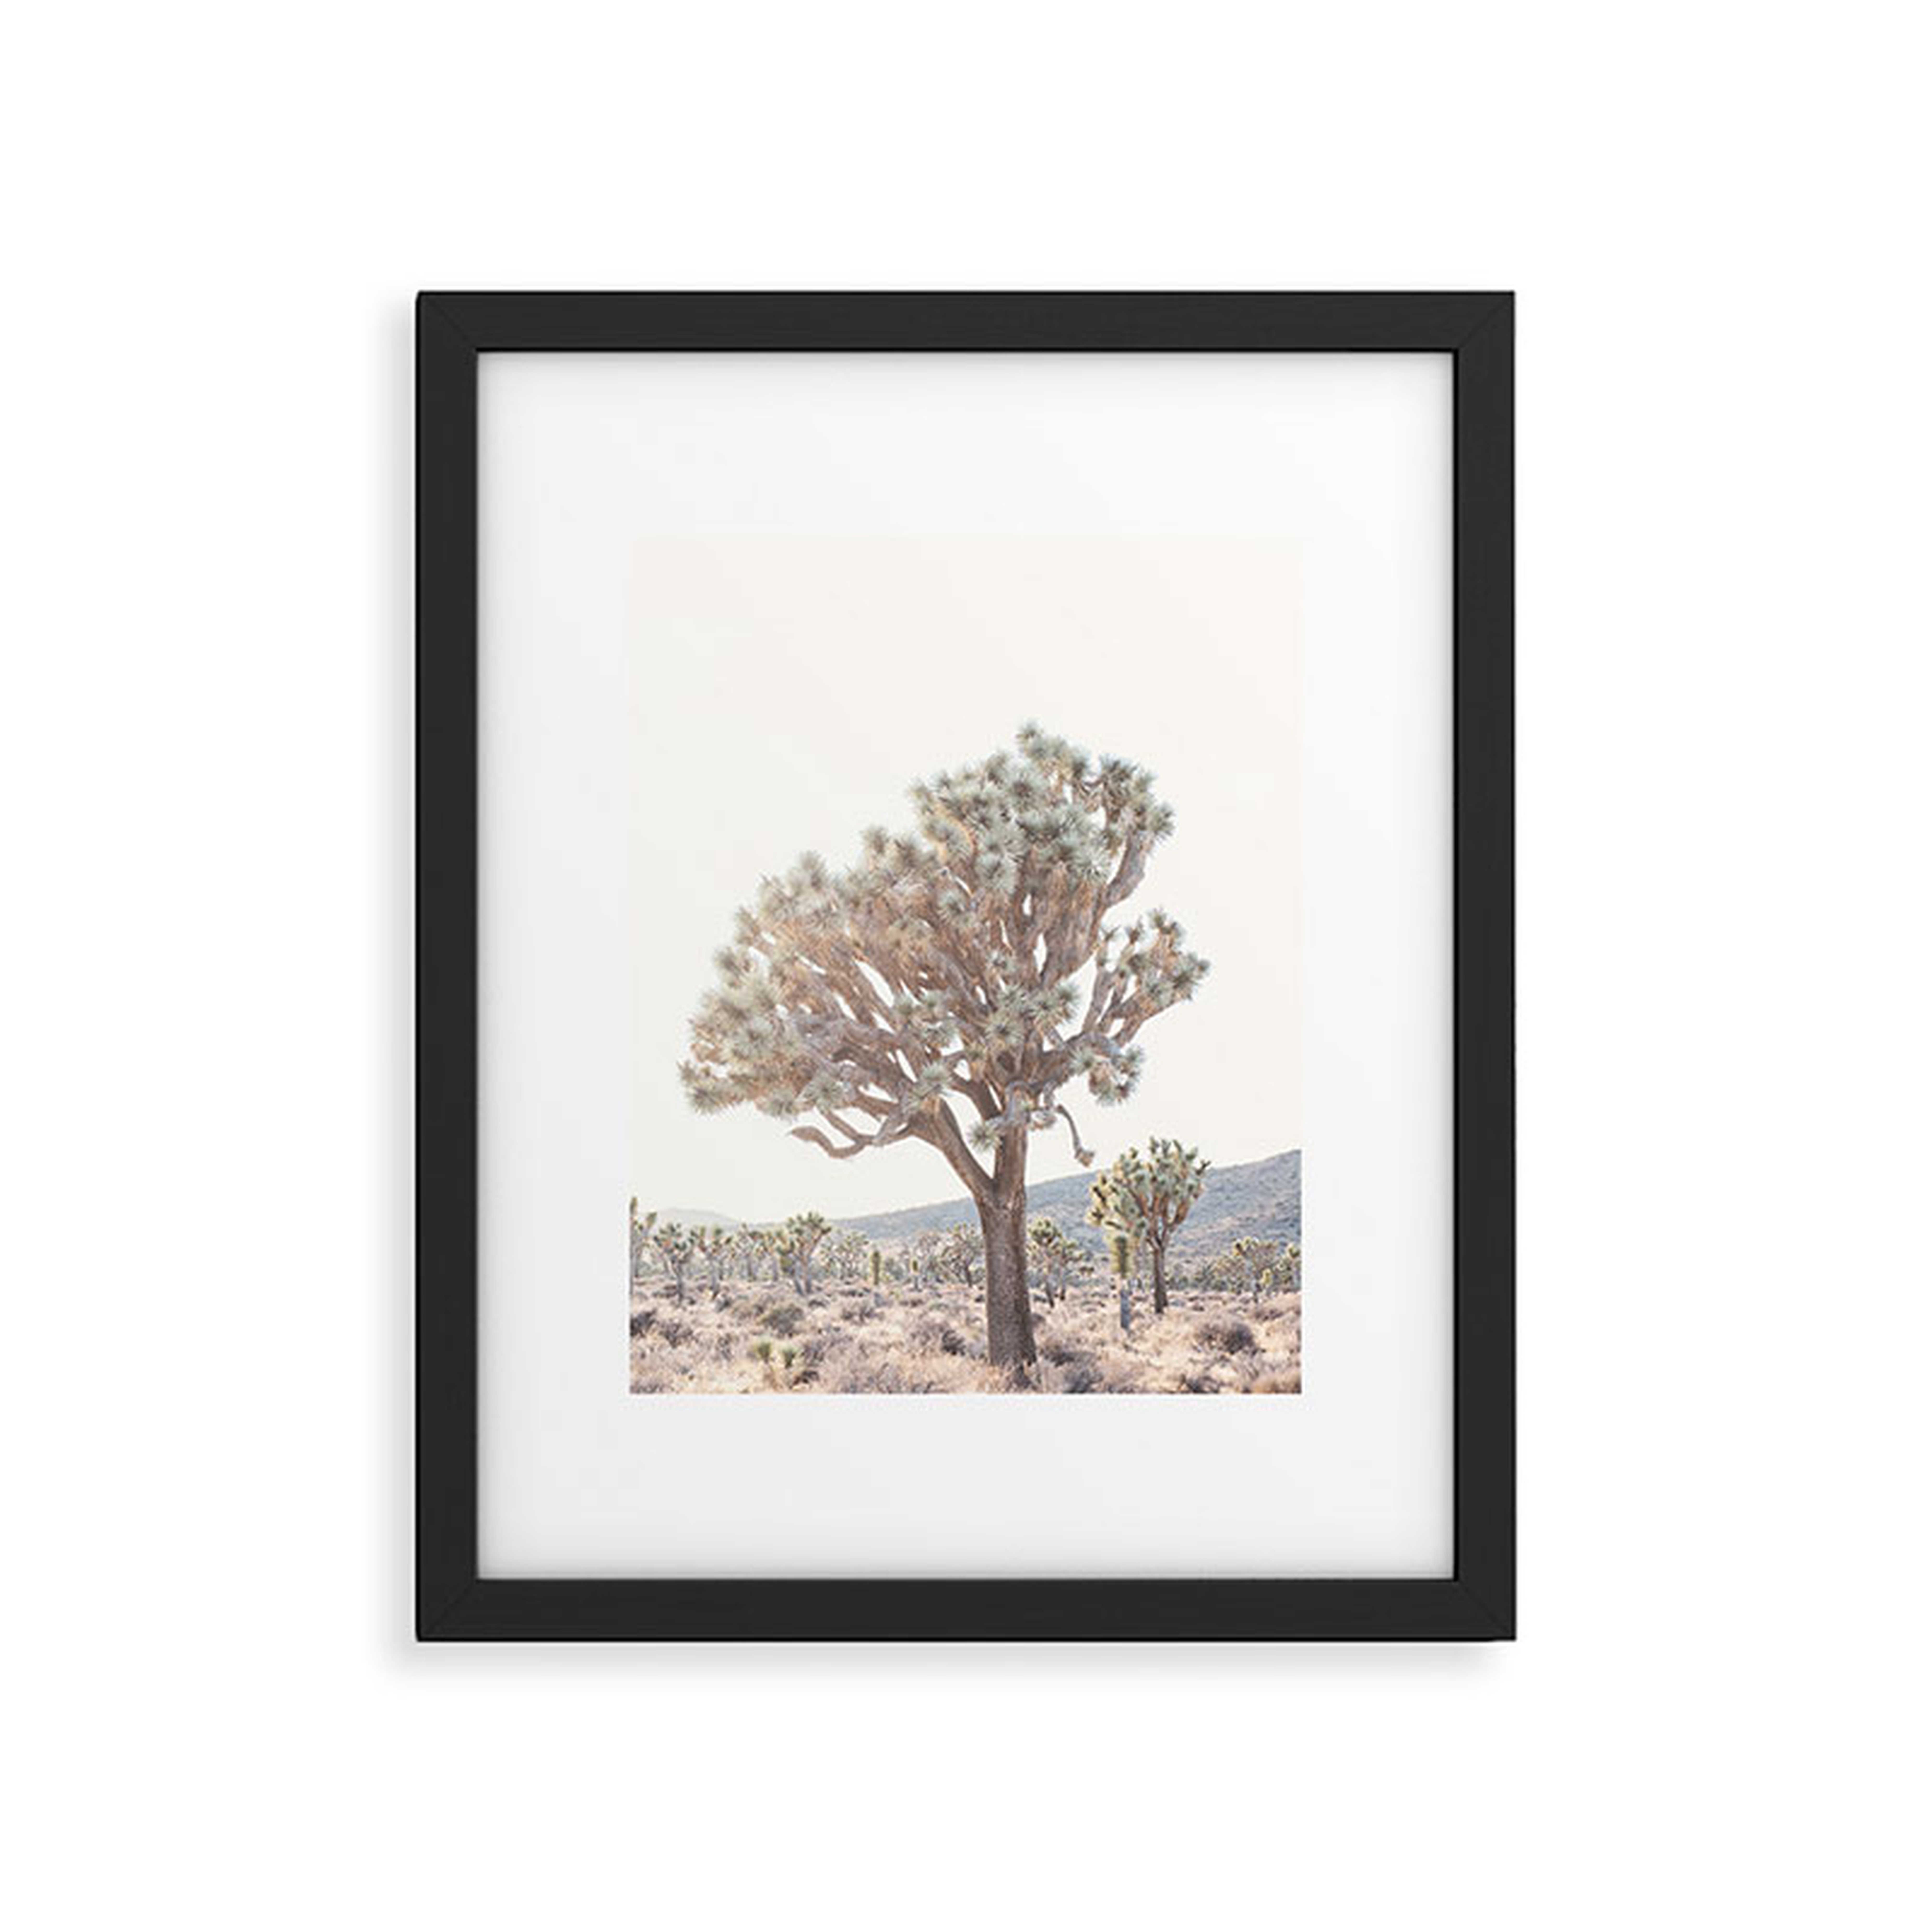 Desert Light by Bree Madden - Modern Framed Art Print, Black, 11" x 14" - Roam Common